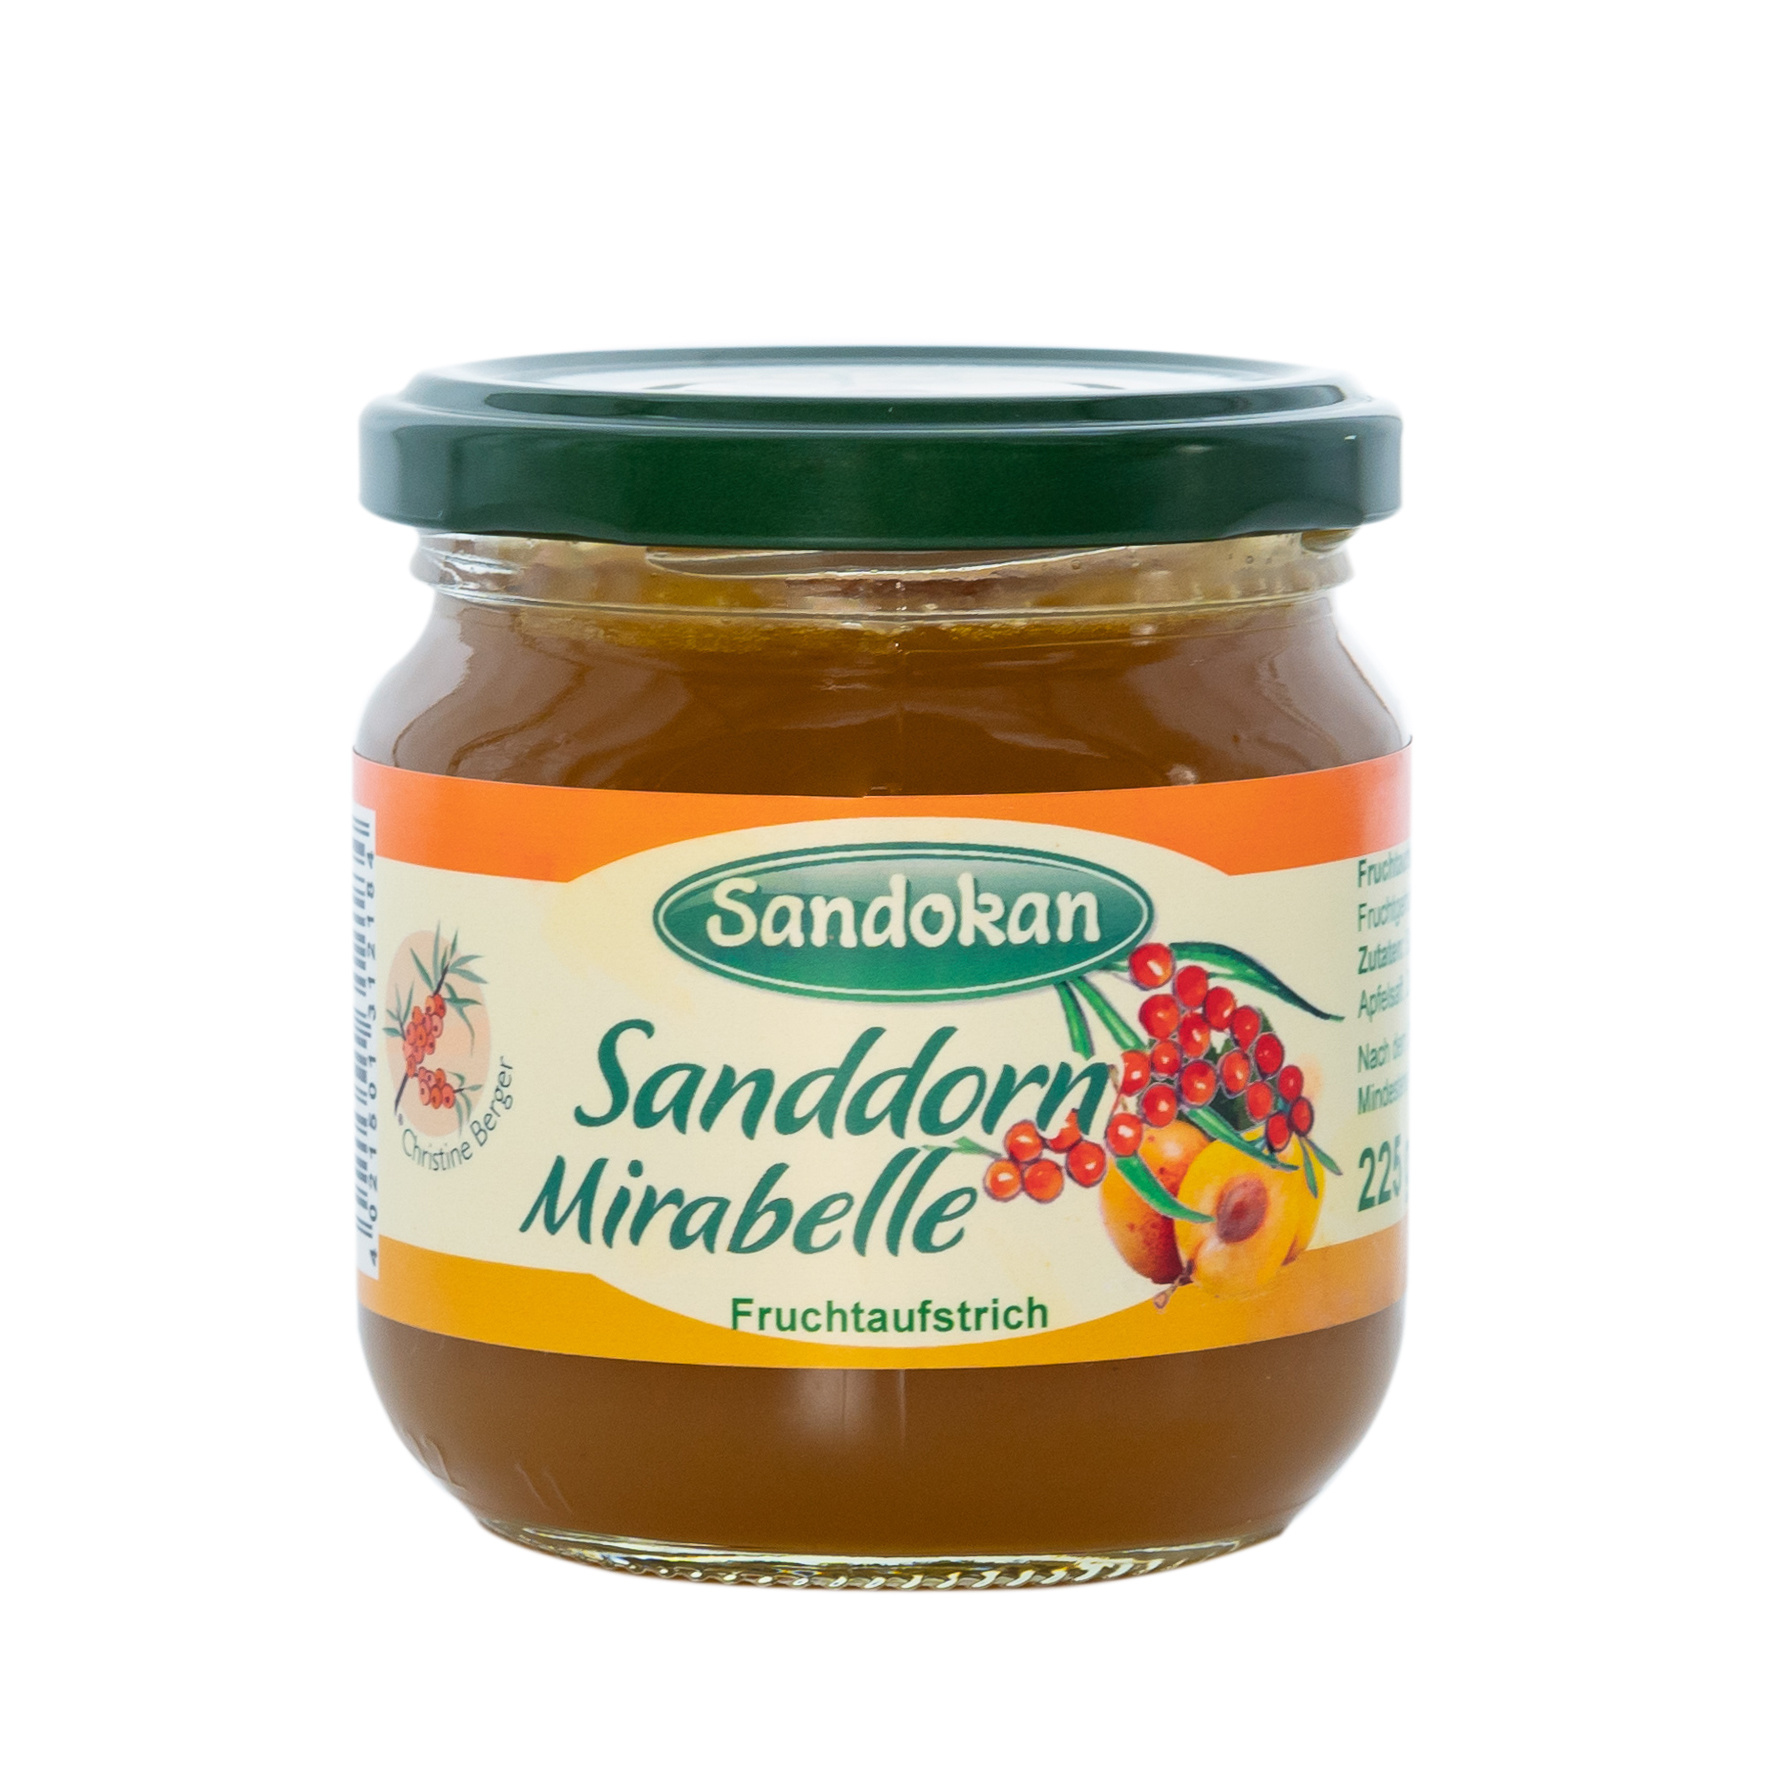 Sanddorn-Mirabelle-Fruchtaufstrich 225 g